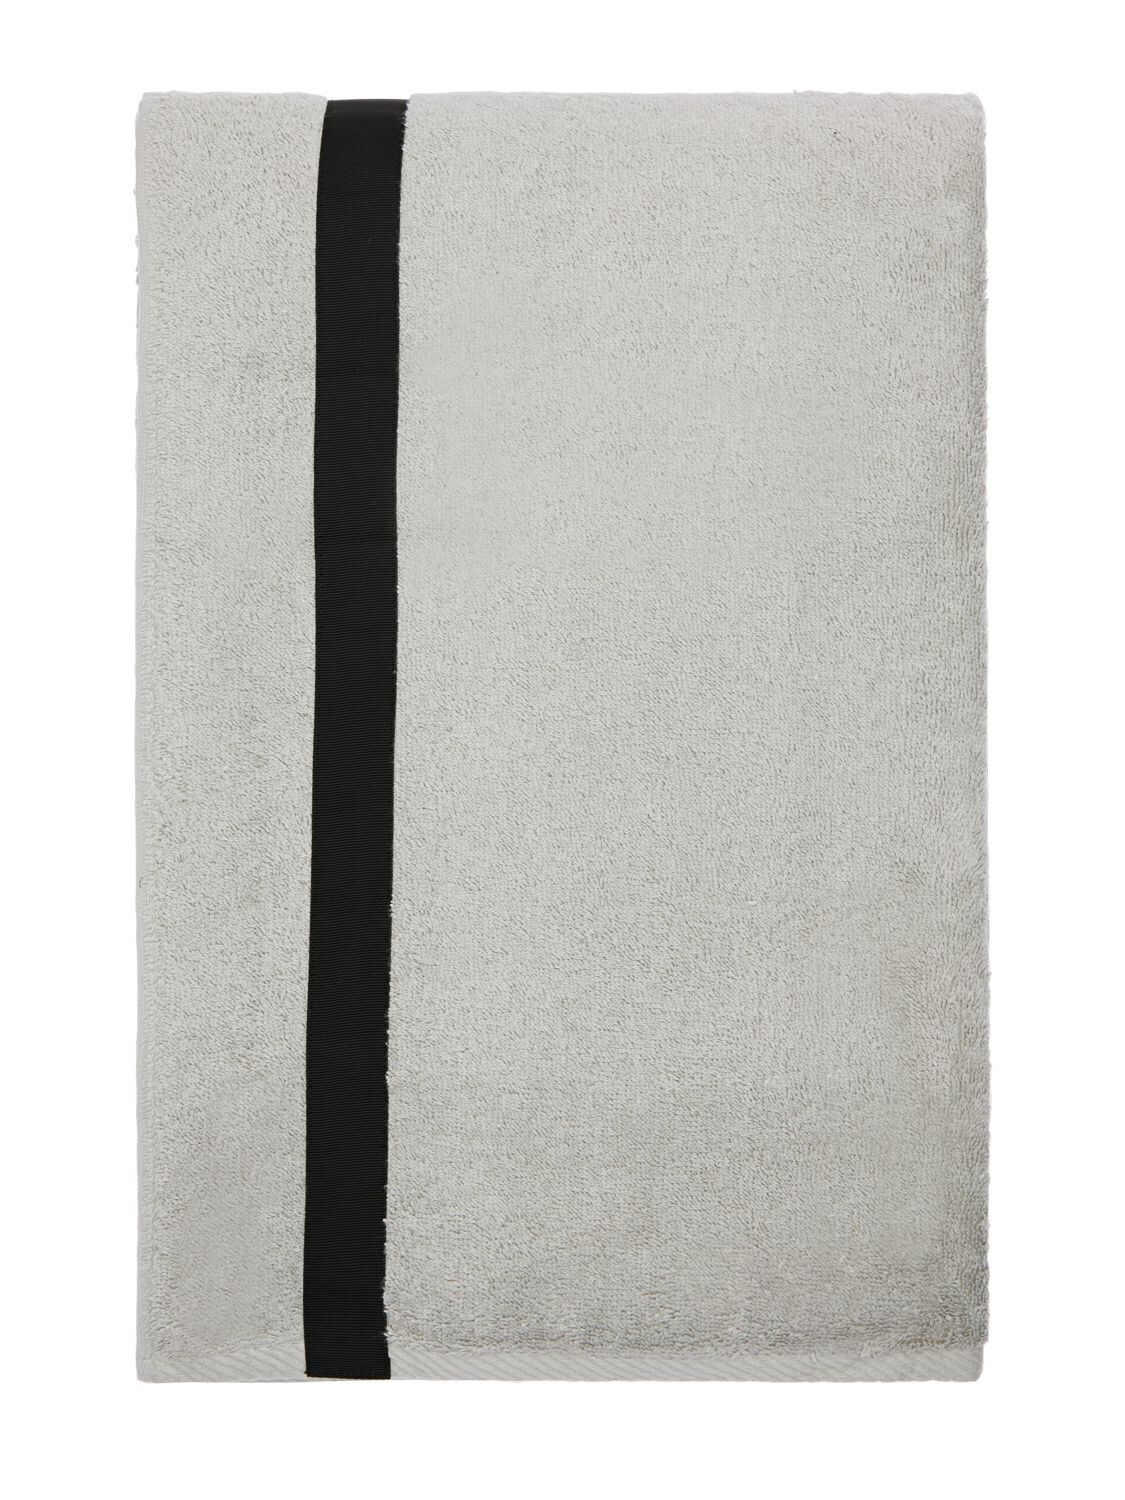 Alessandro Di Marco Cotton Terrycloth Bath Towel In Grey,black